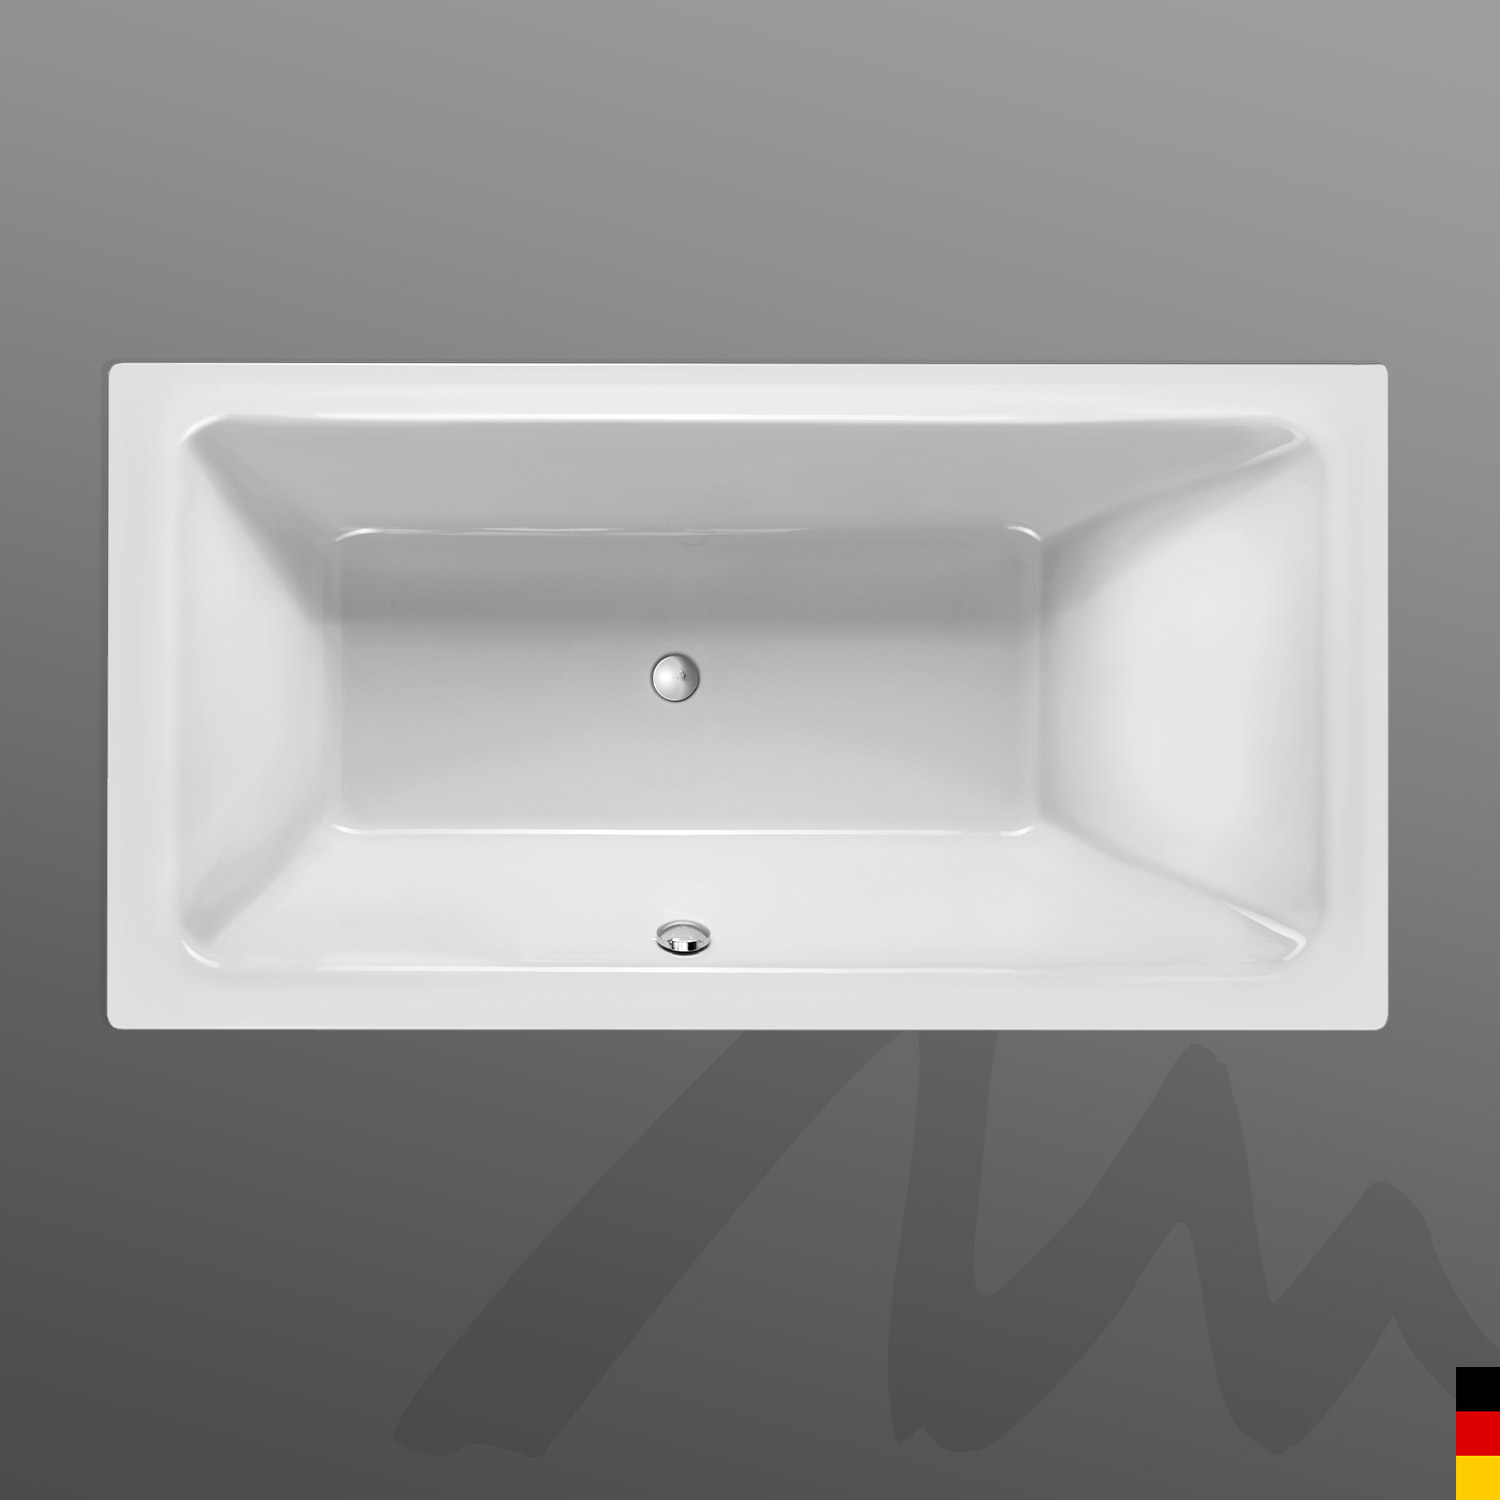 Mauersberger Badewanne Rechteck Convexa 190/100  190x100x45  Farbe:weiß